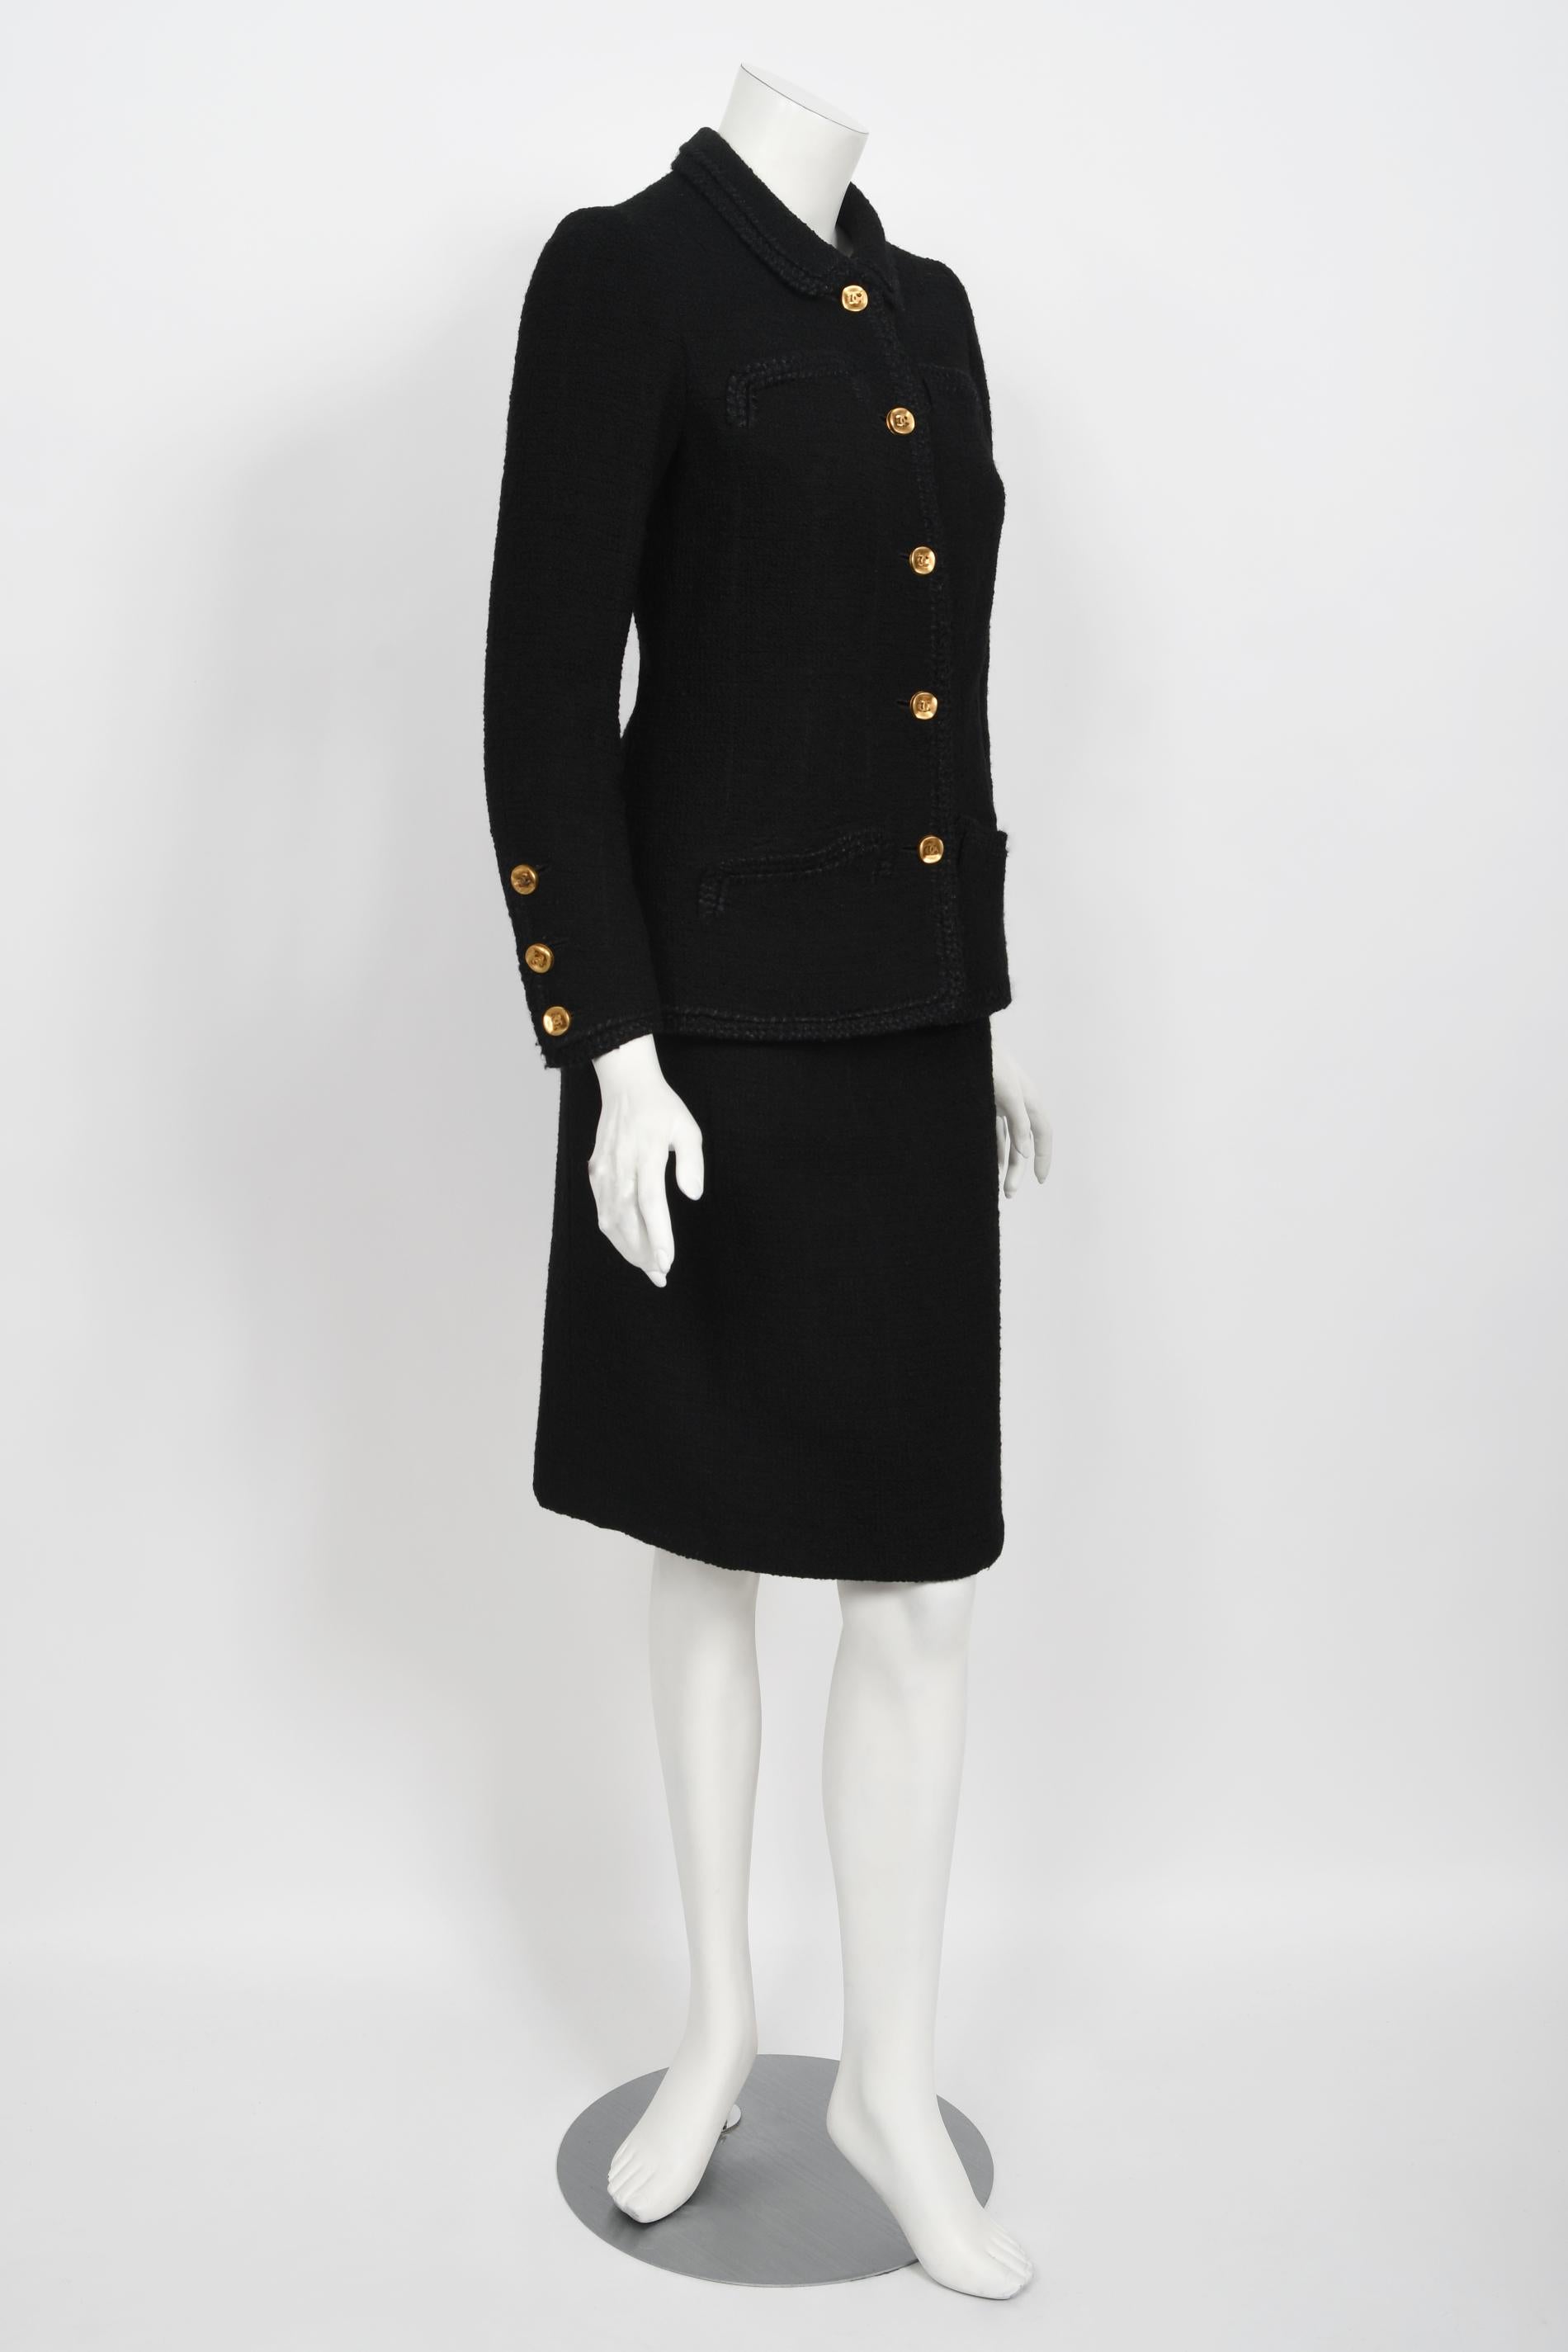 Vintage 1973 Chanel Haute Couture Black Boucle Wool Logo Buttons Jacket Suit  7